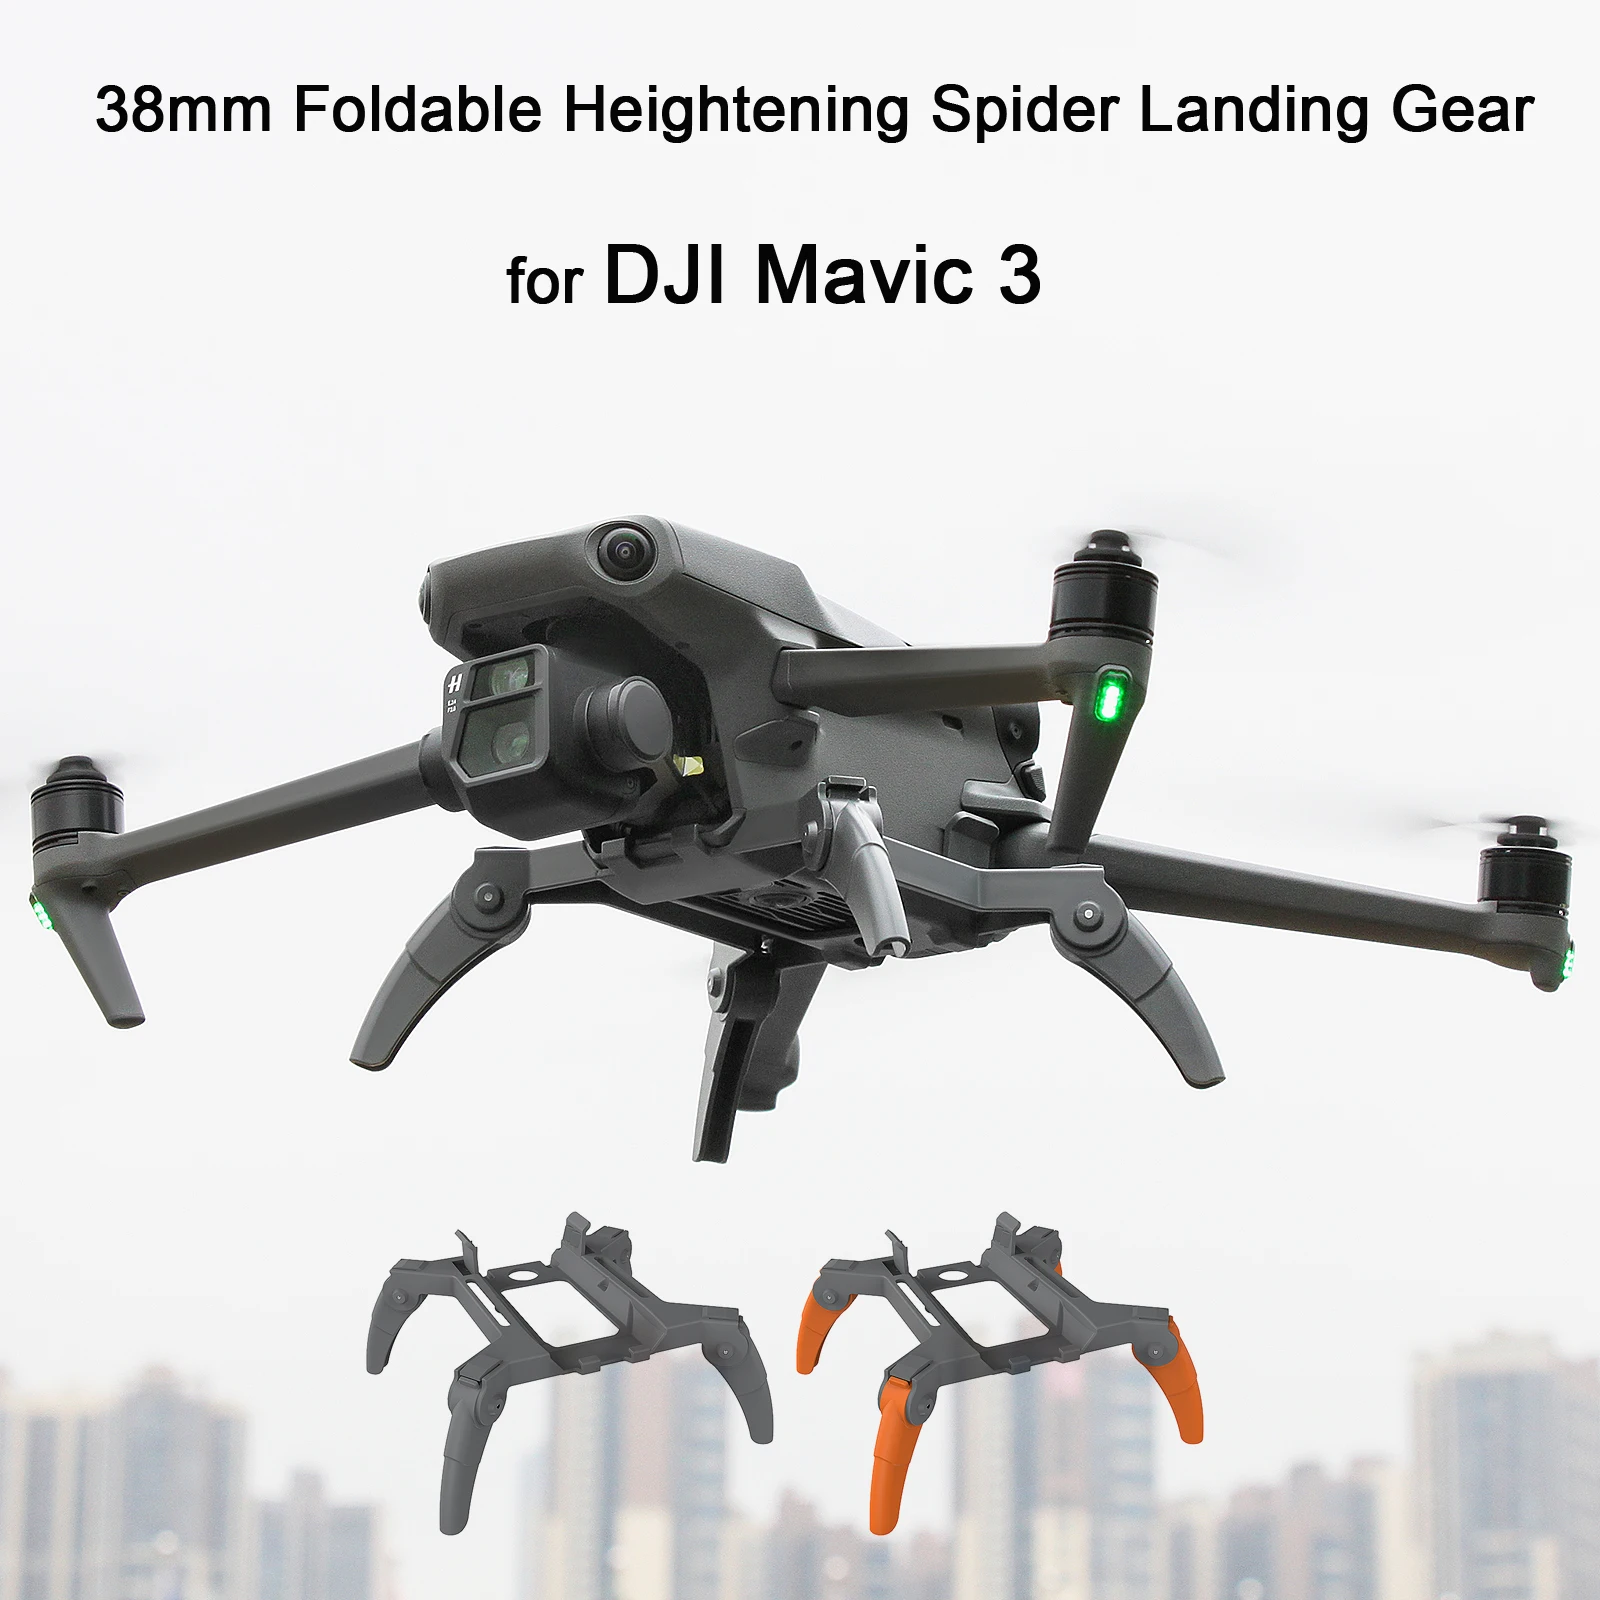 38มม.Spider ความสูง Landing Gear ขา Heighten สำหรับ DJI Mavic 3 Drone ขาตั้งขาตั้งสนับสนุน Protector Drone อุปกรณ์เสริม